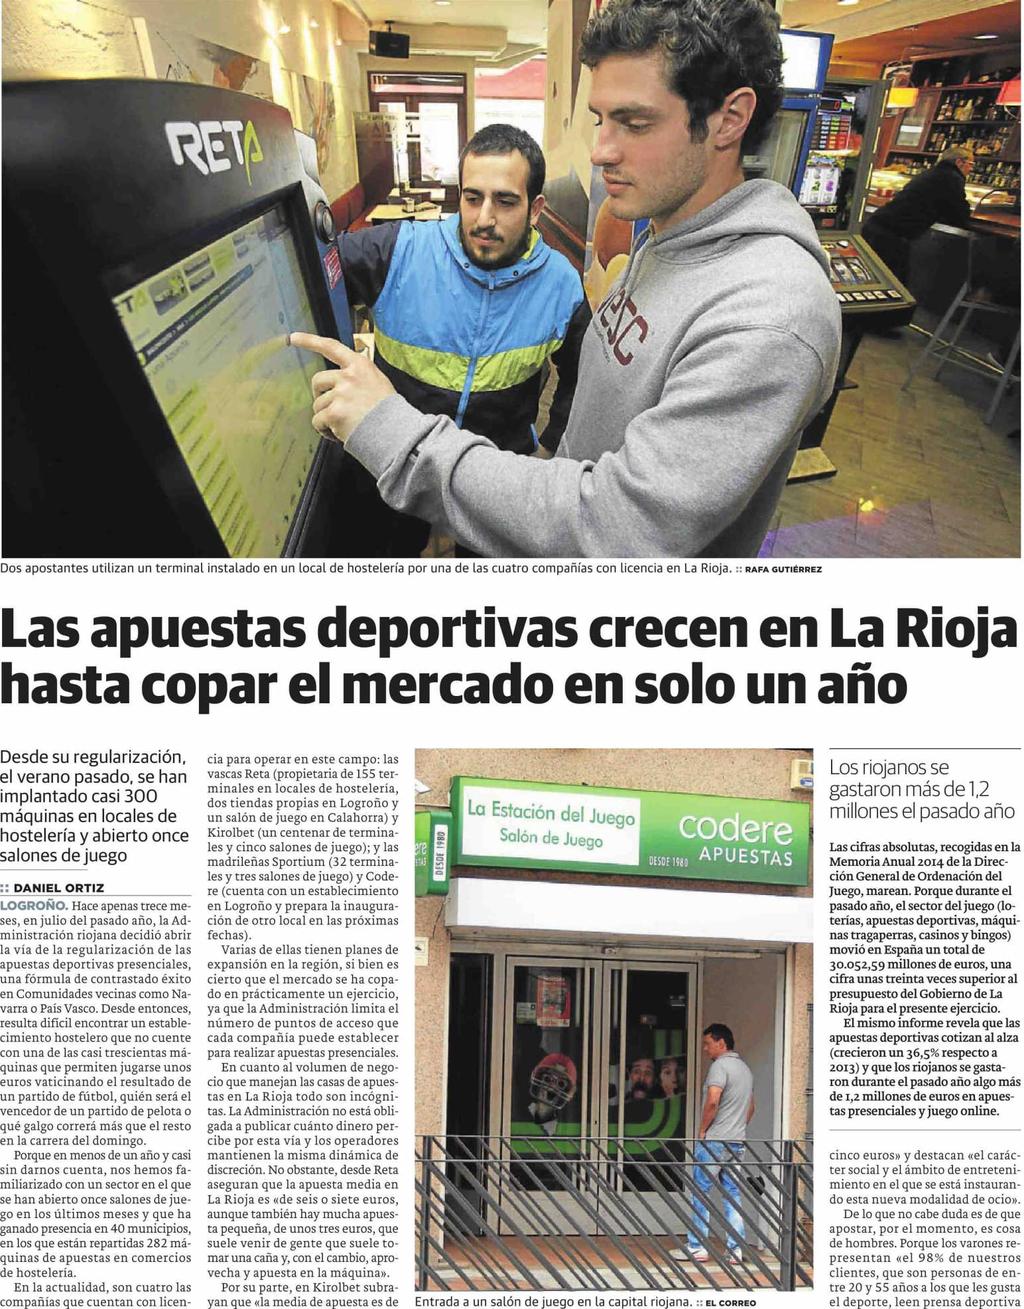 El Correo español-el Pueblo vasco (Ed. la Rioja) La Rioja 10/08/15 Prensa: Diaria Tirada: 1.